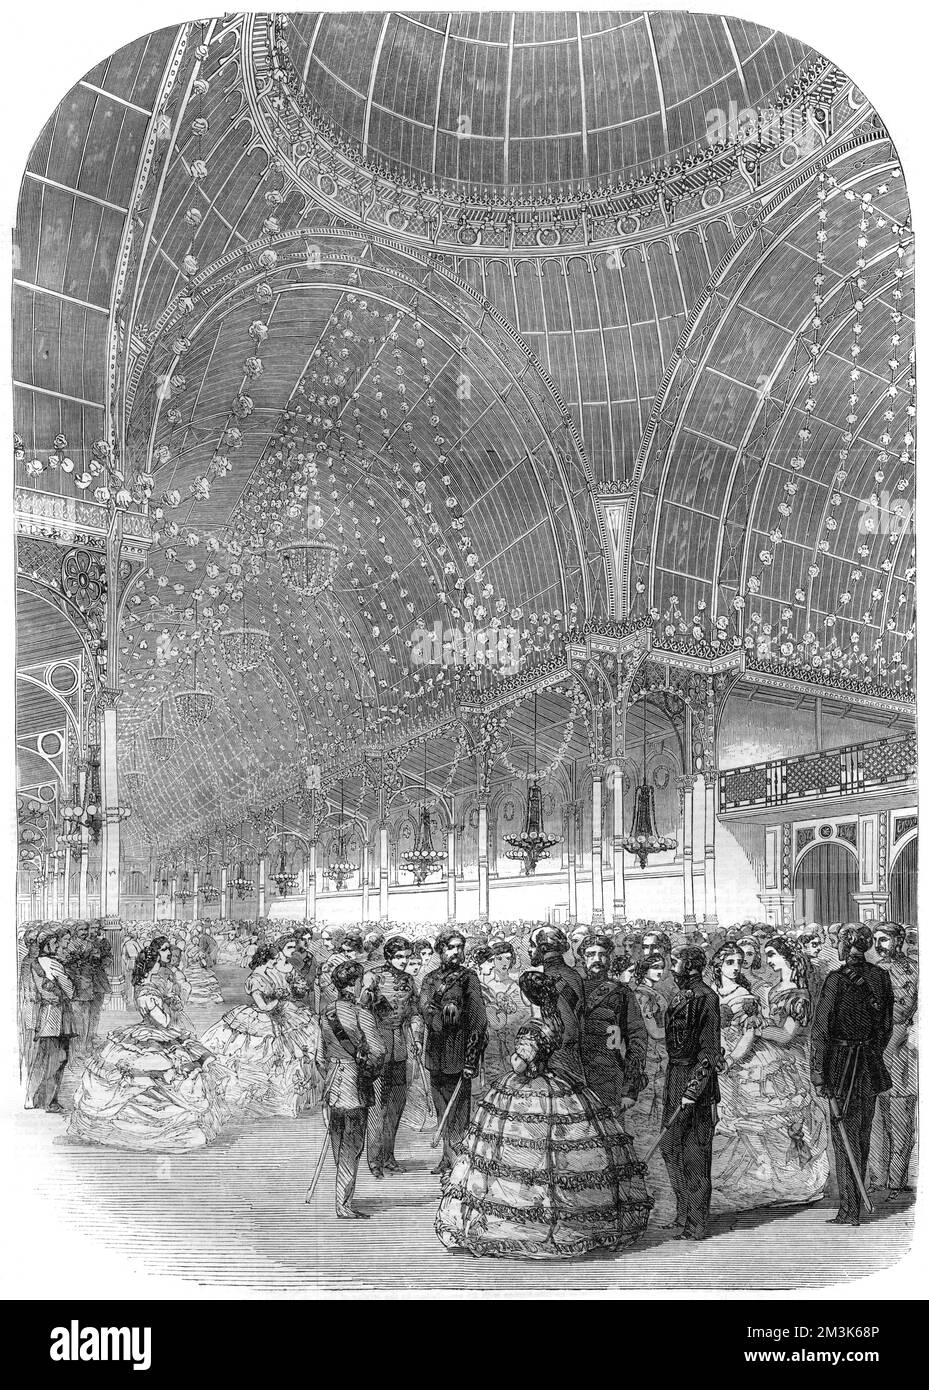 Volunteer's Ball in der Floral Hall in Covent Garden, London. Dieses Bild zeigt die Freiwilligen in ihren Uniformen und ihre Partner in formellen Abendkleidern. Die Floral Hall war und ist ein Gebäude aus edlem Eisen und Glas. 1860 Stockfoto